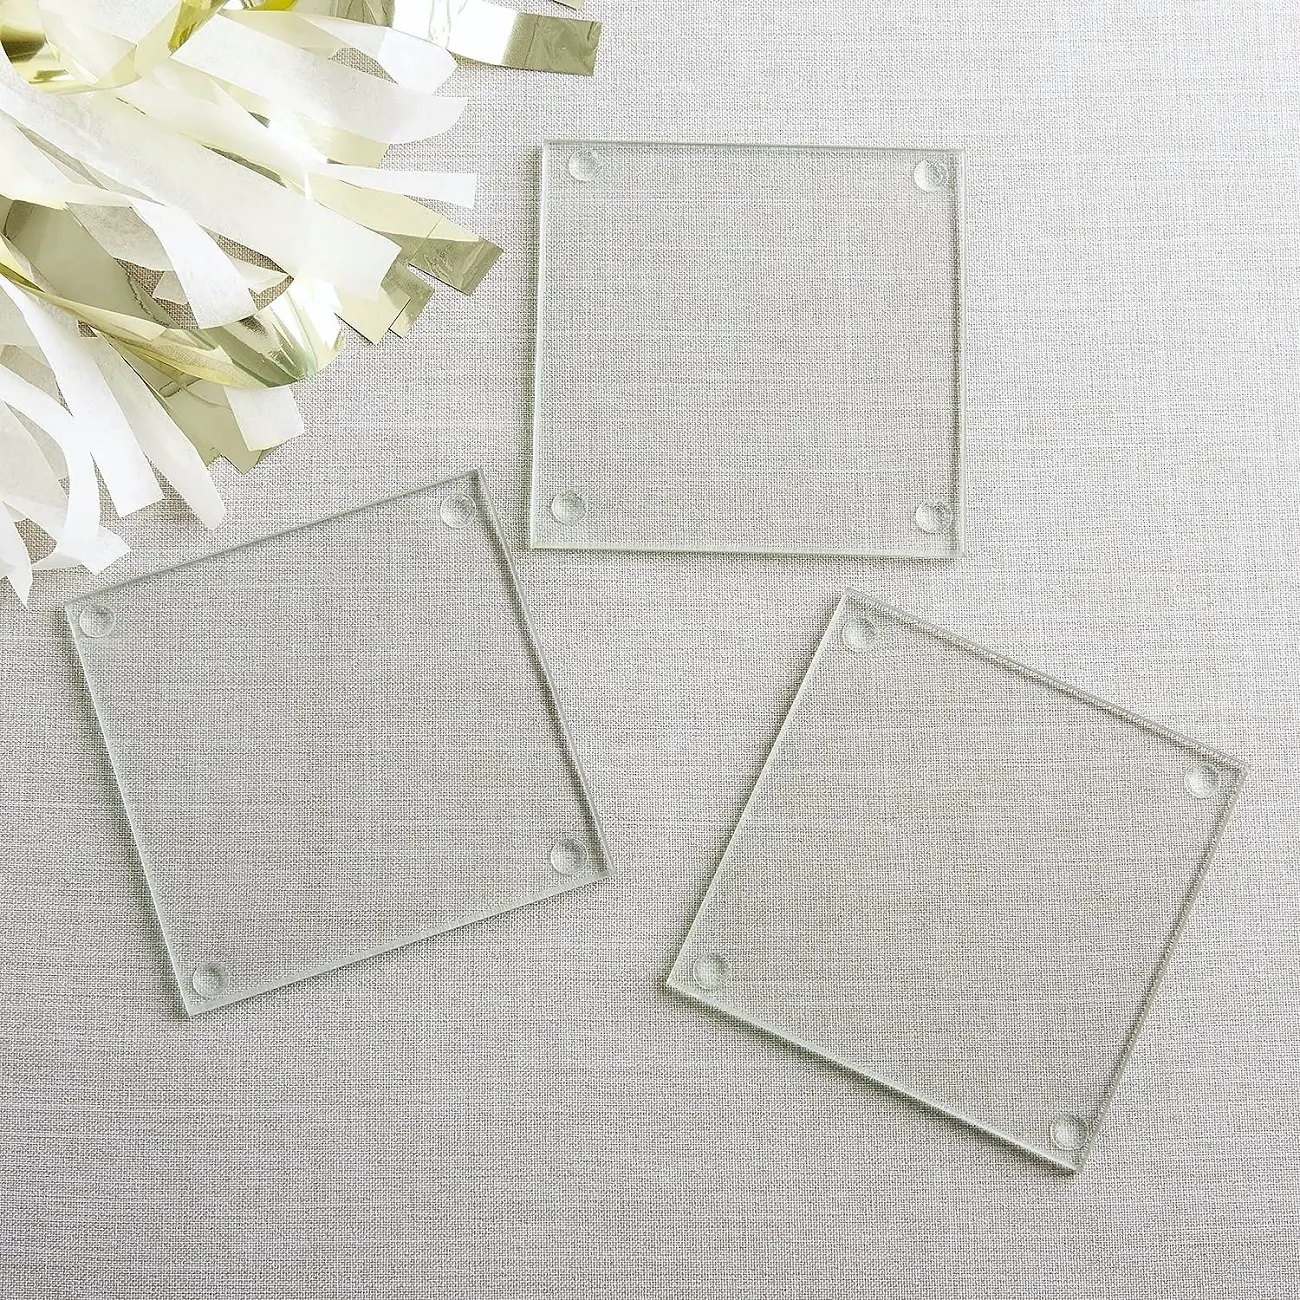 Posavasos transparente cuadrado de vidrio templado de 4 "x 4", decoración del hogar o recuerdo de fiesta DIY